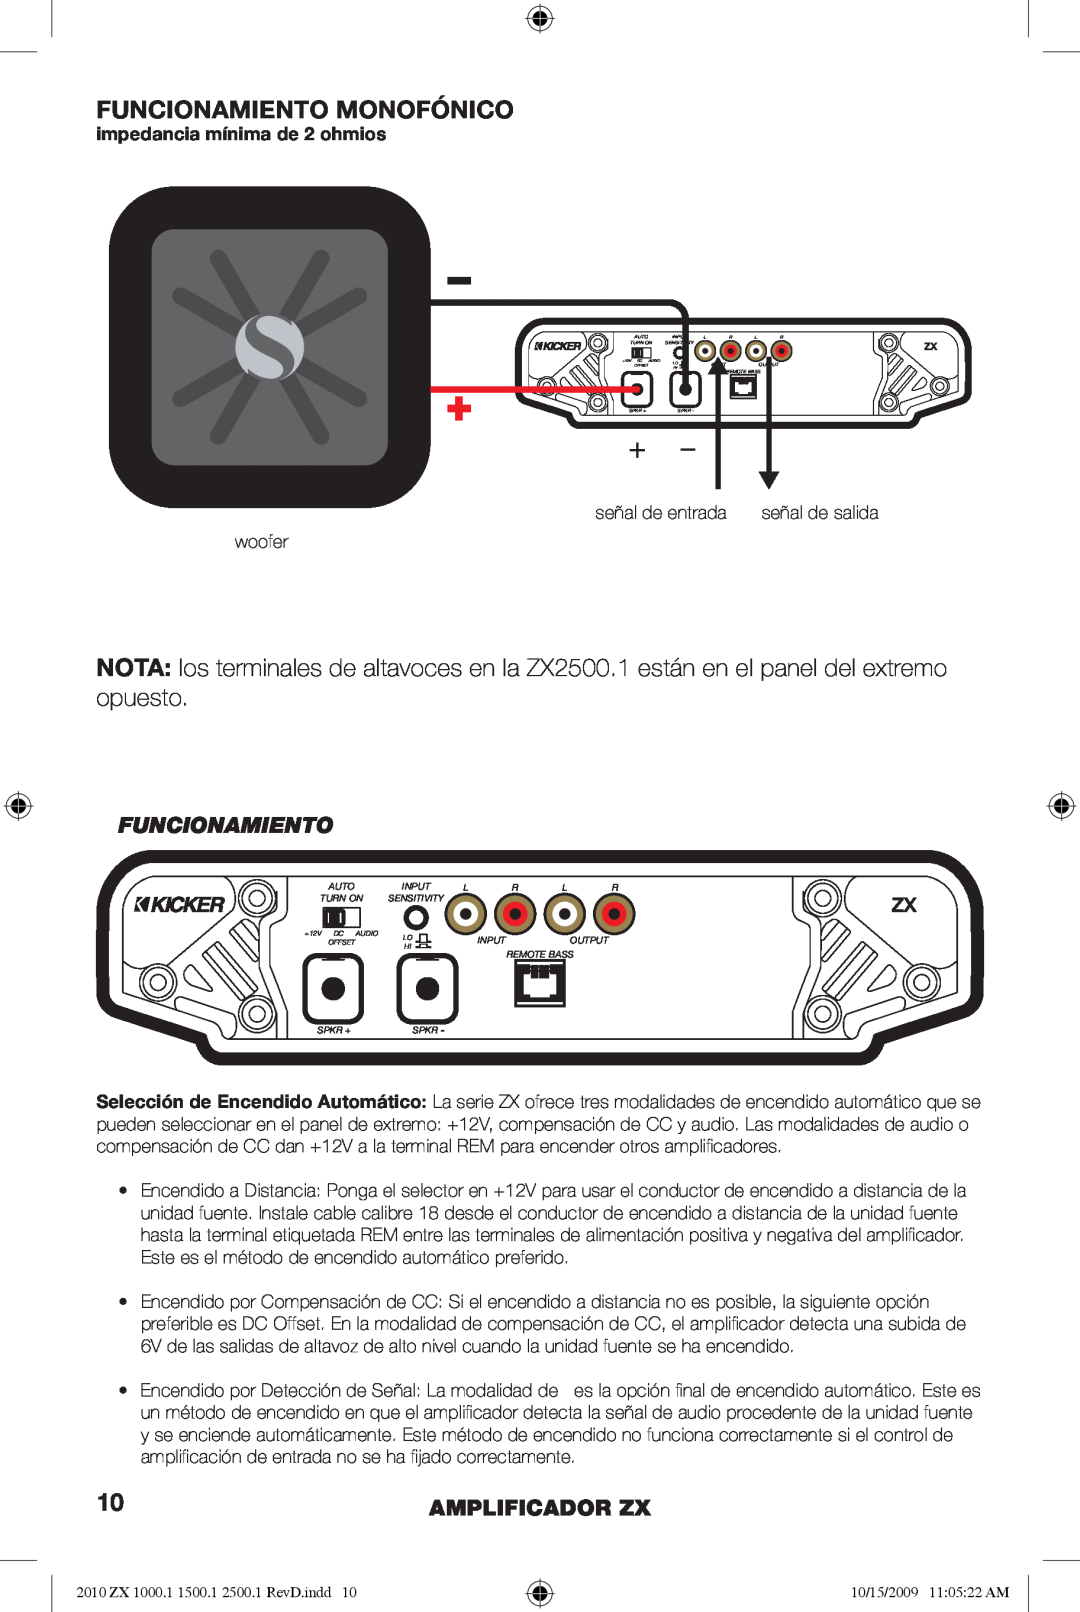 Kicker ZX1500.1, ZX2500.1, ZX1000.1 manual Funcionamiento Monofónico, Amplificador Zx, impedancia mínima de 2 ohmios 